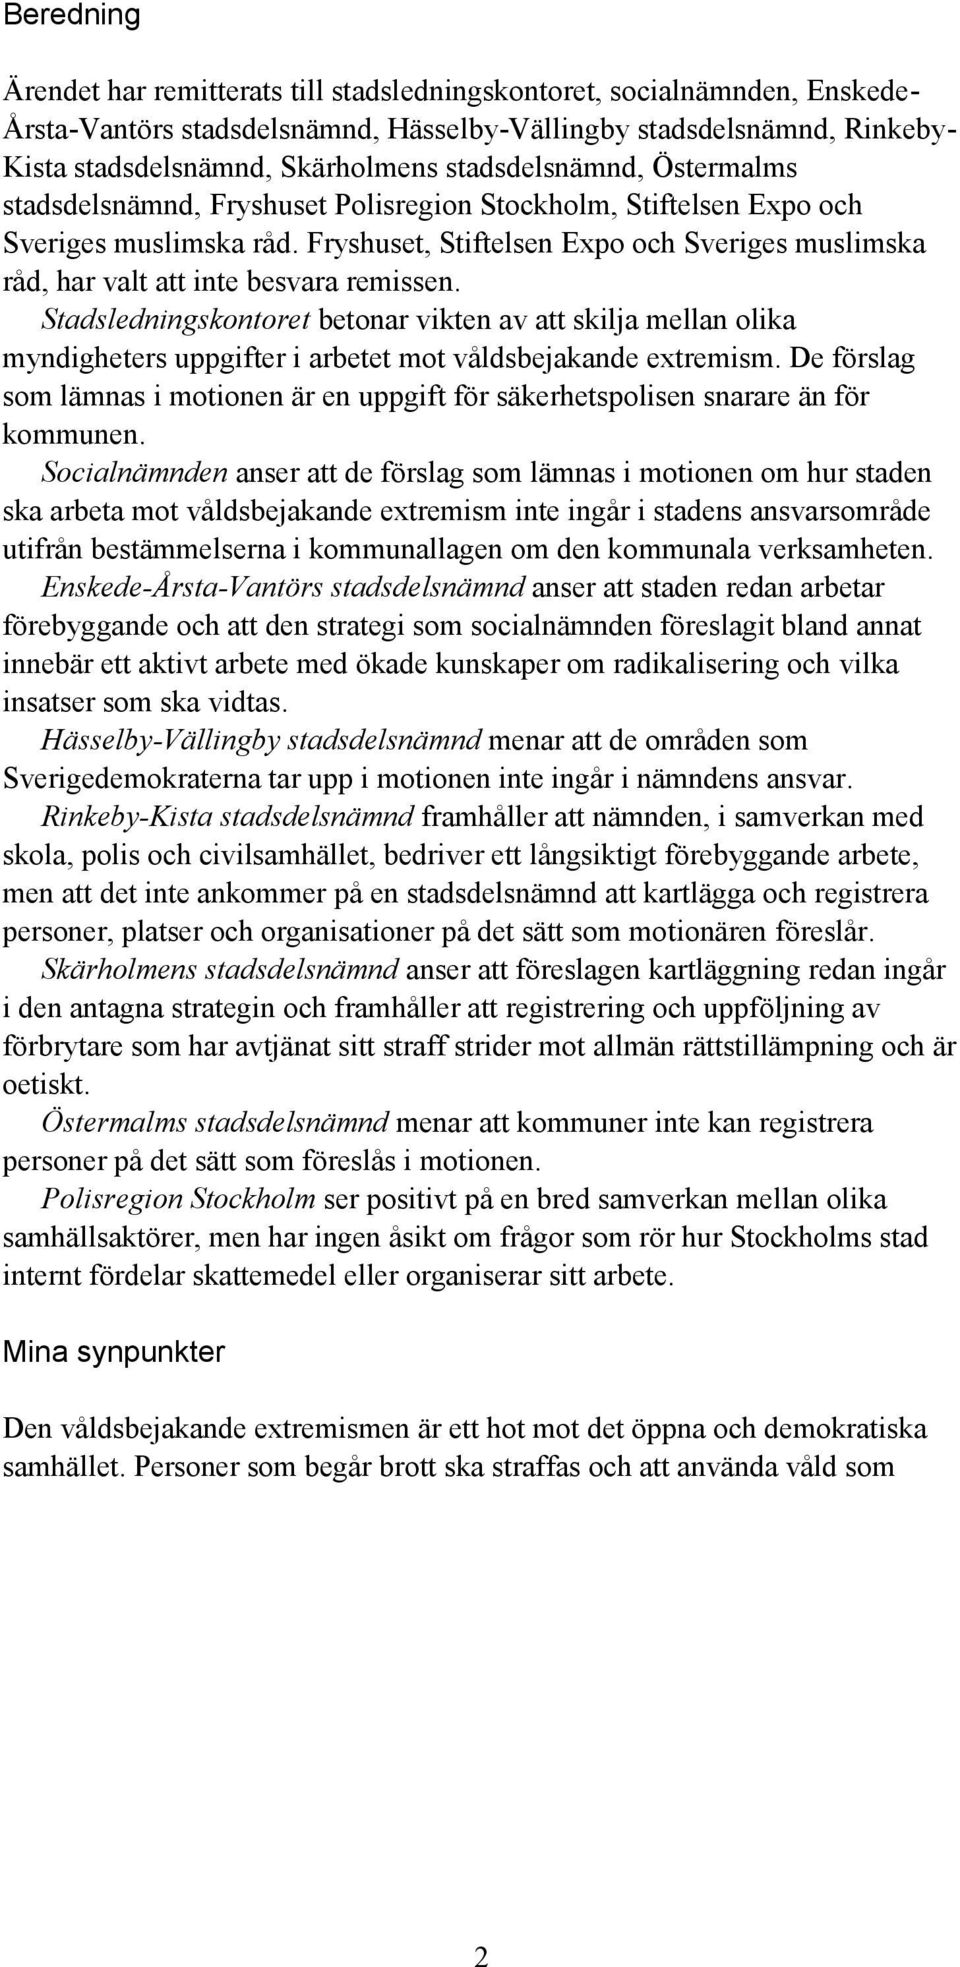 Fryshuset, Stiftelsen Expo och Sveriges muslimska råd, har valt att inte besvara remissen.